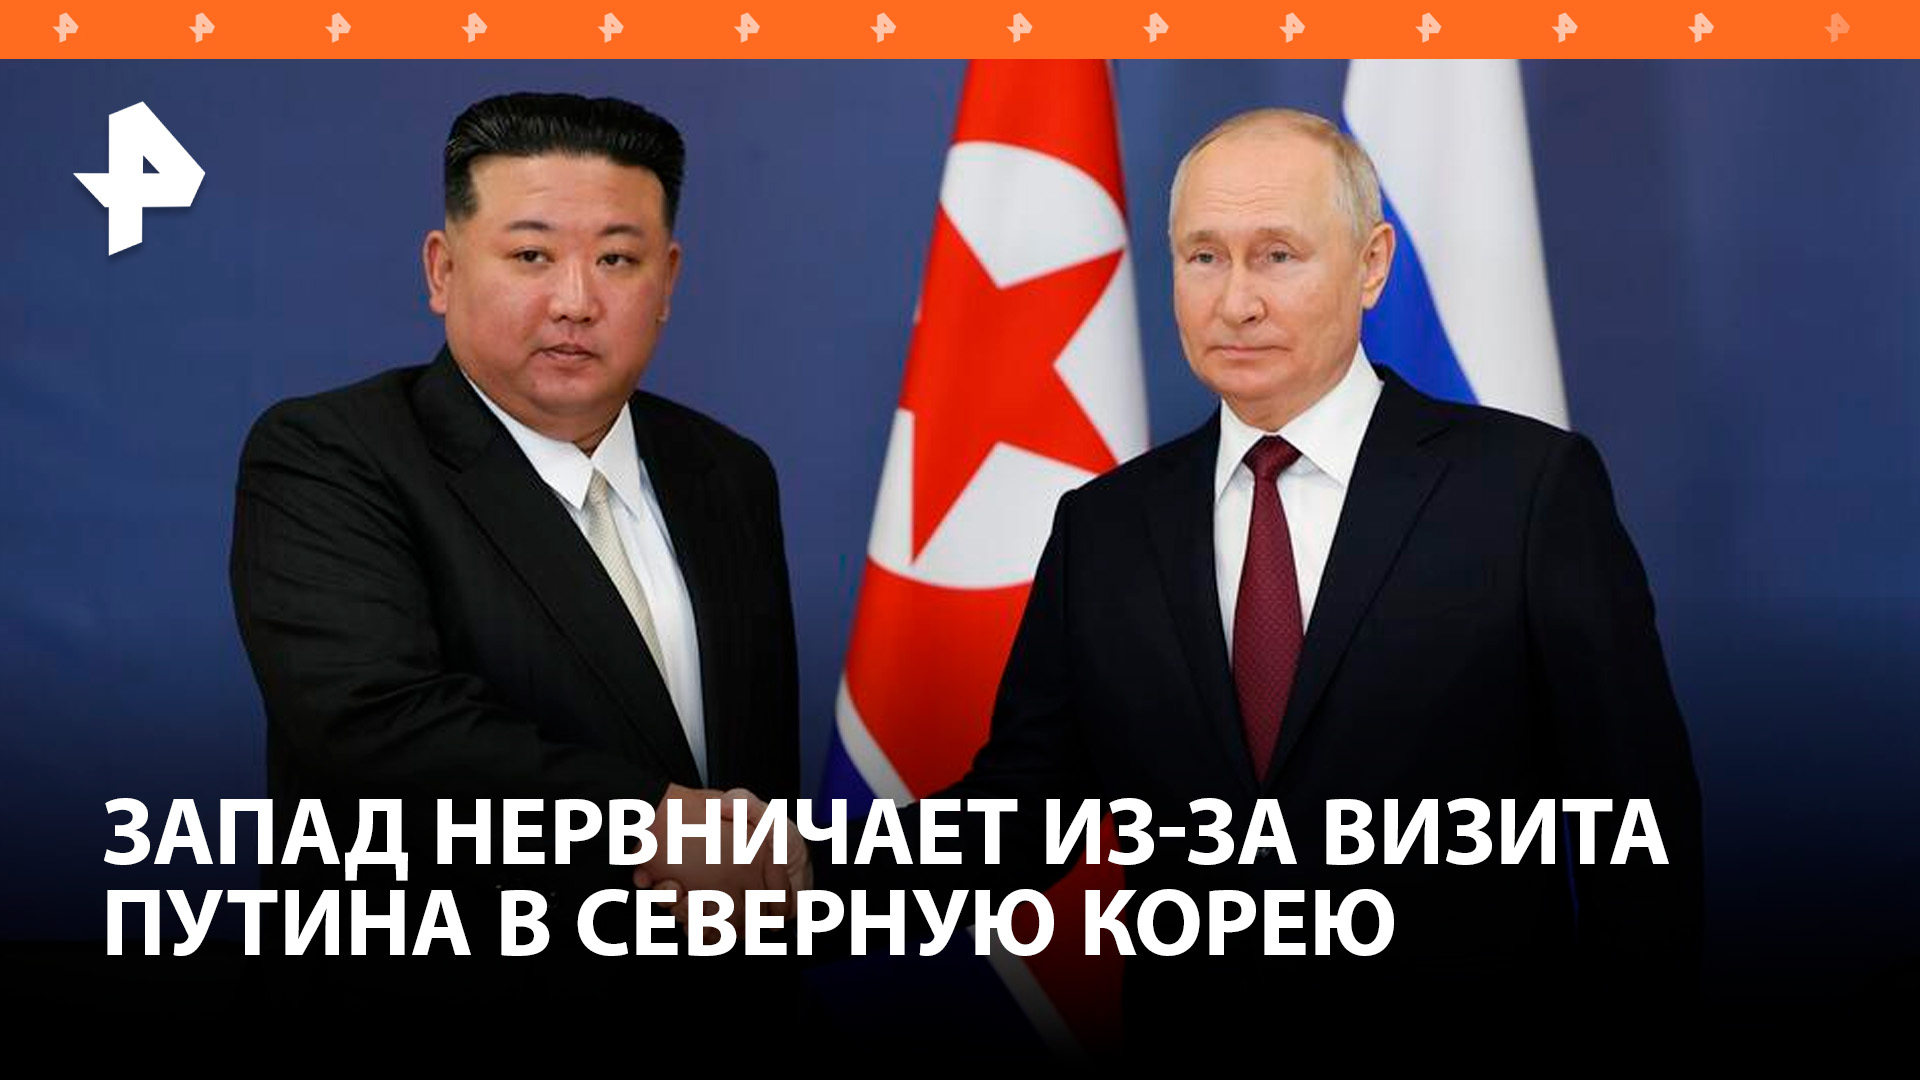 Визит Путина в КНДР покажет взаимную поддержку двух стран  западные СМИ / РЕН Новости